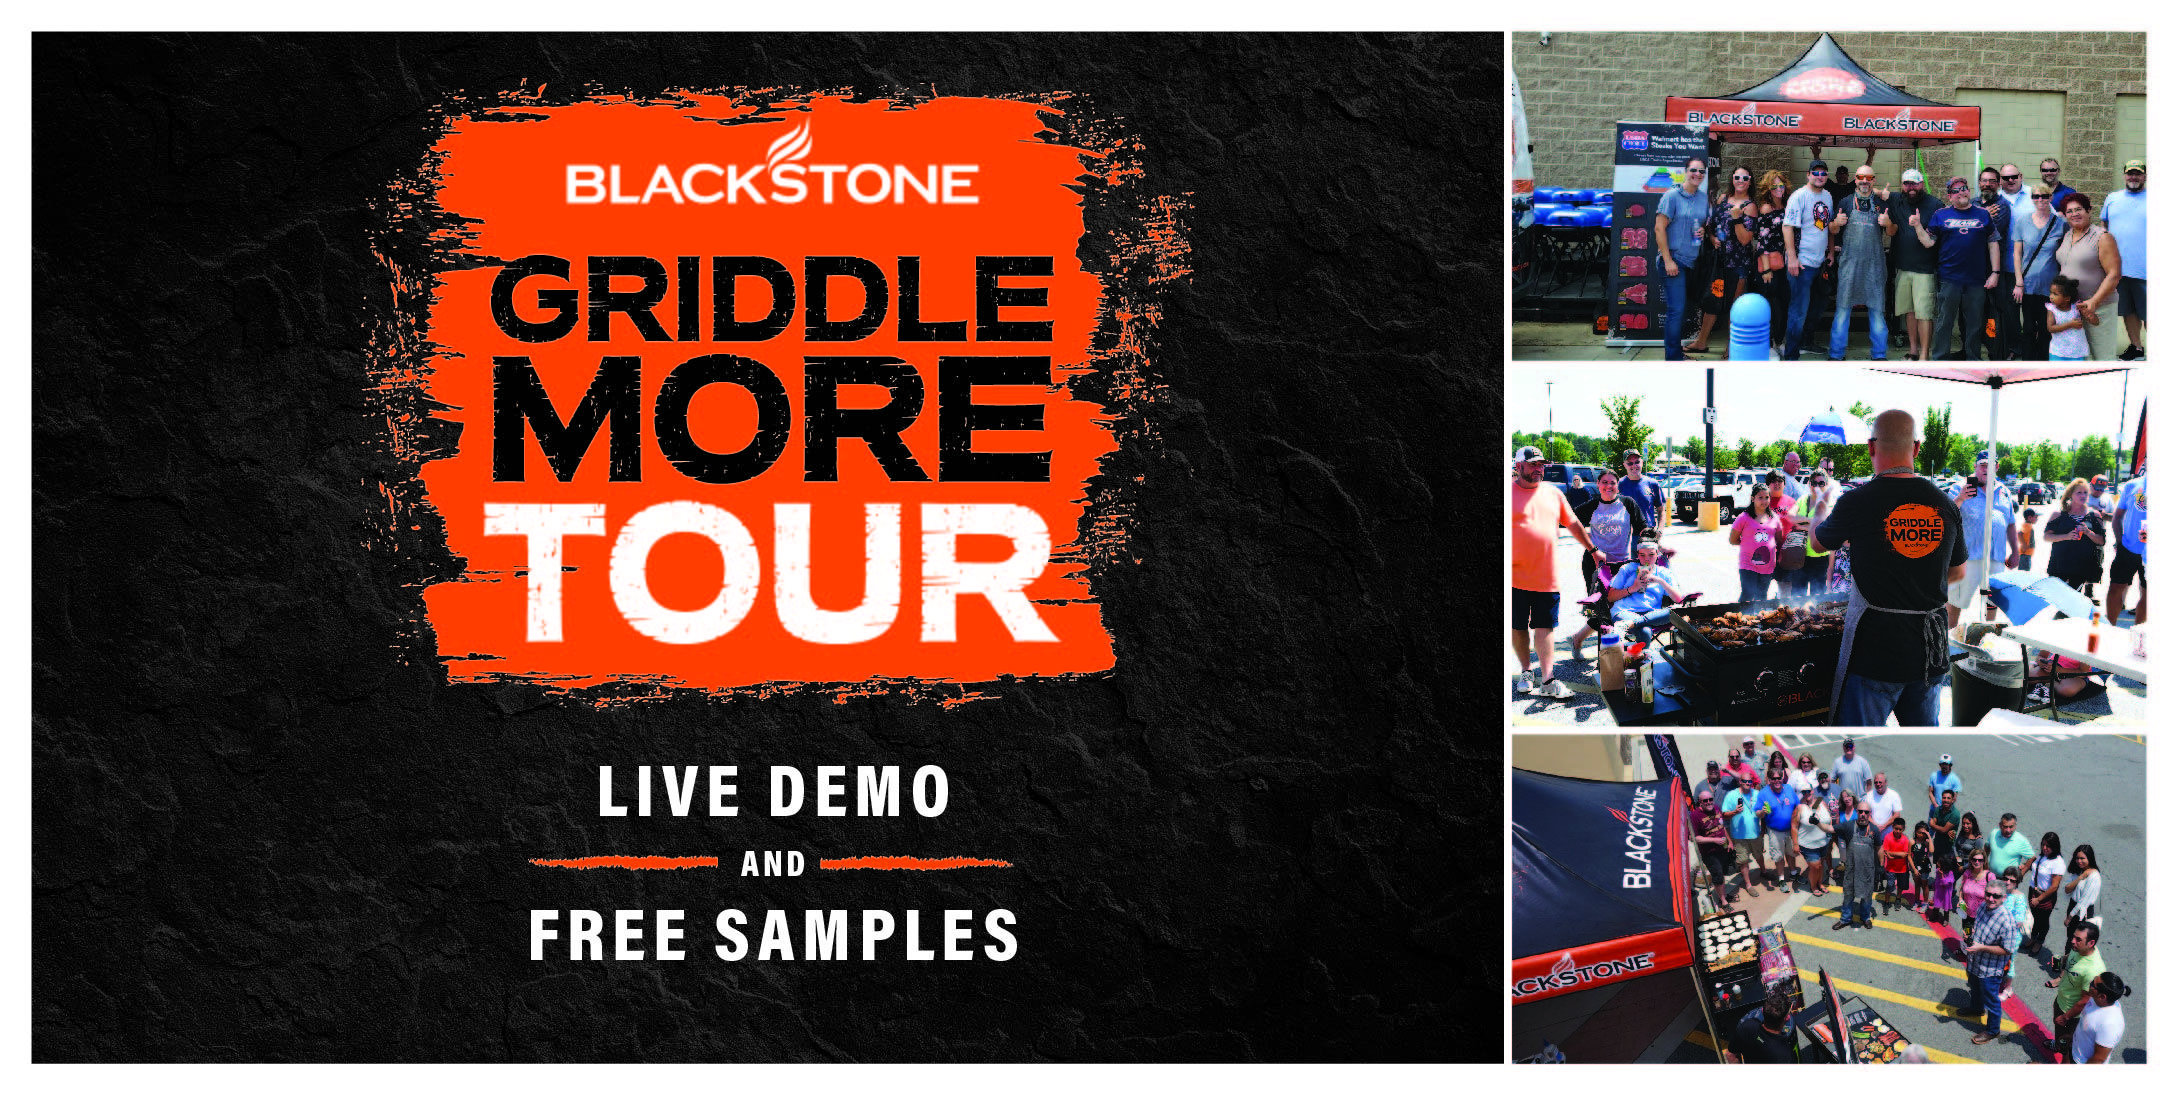 Blackstone Griddle More Tour 26 APR 2020